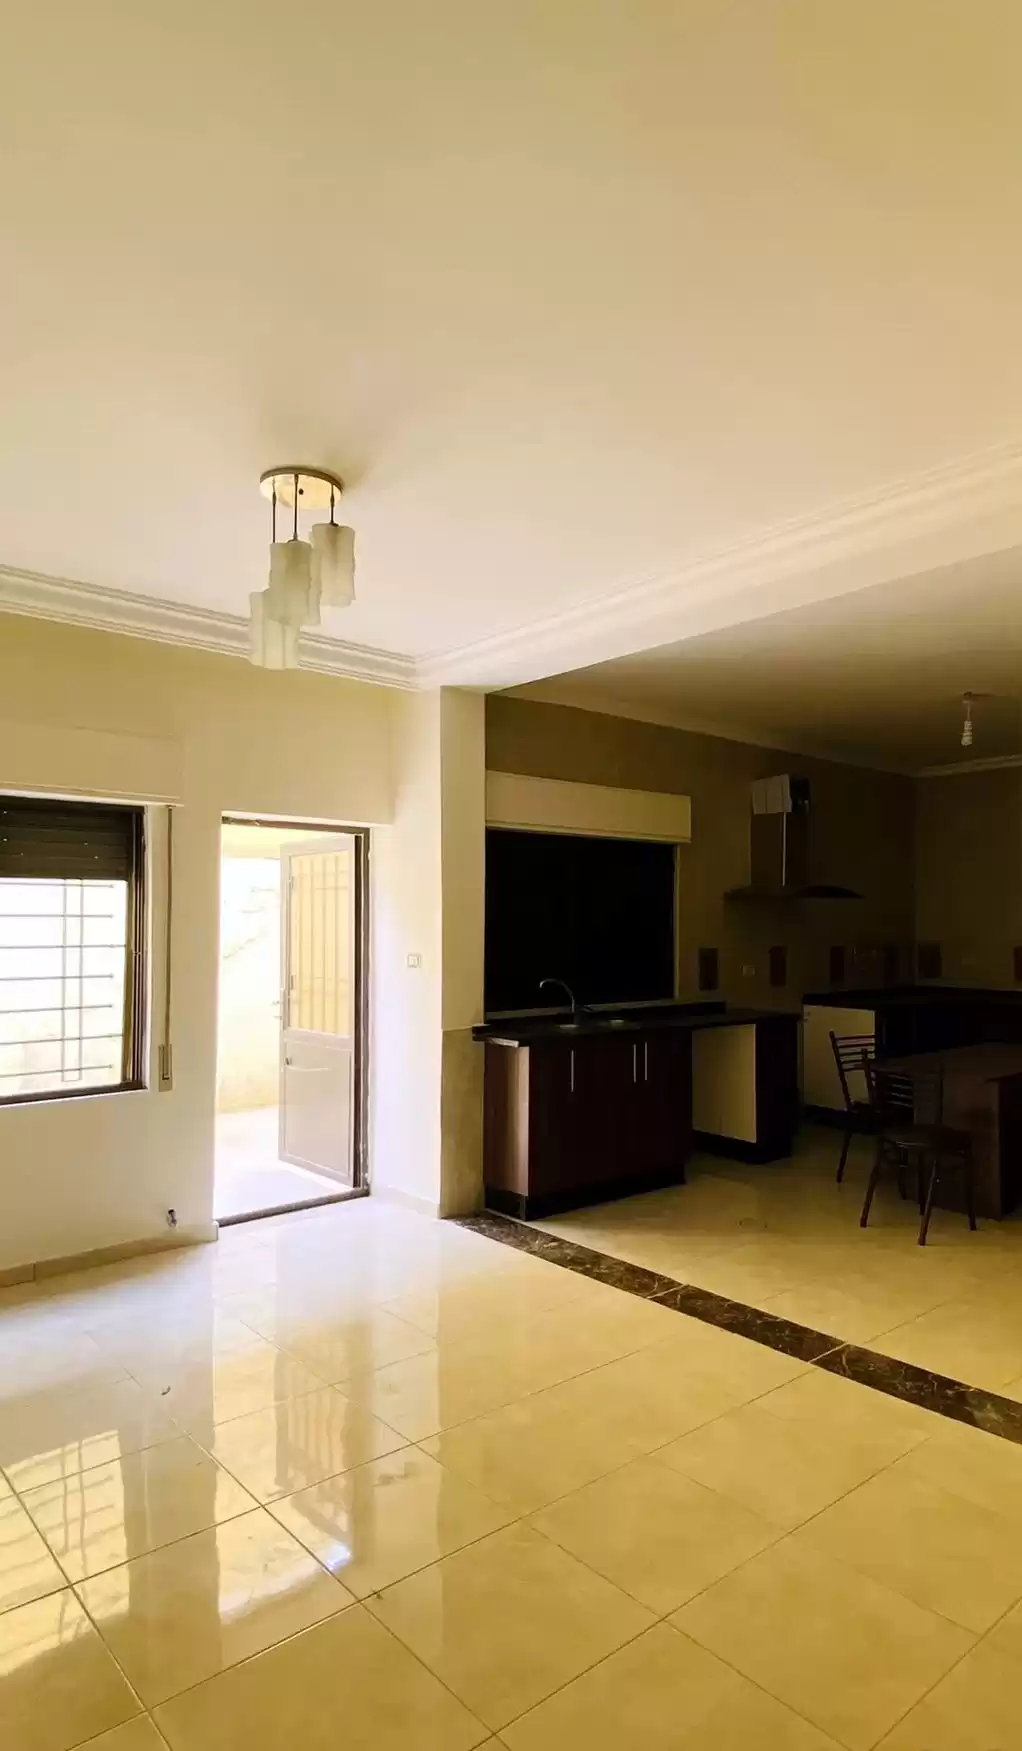 Résidentiel Propriété prête 3 chambres U / f Appartement  a louer au Amman #26026 - 1  image 